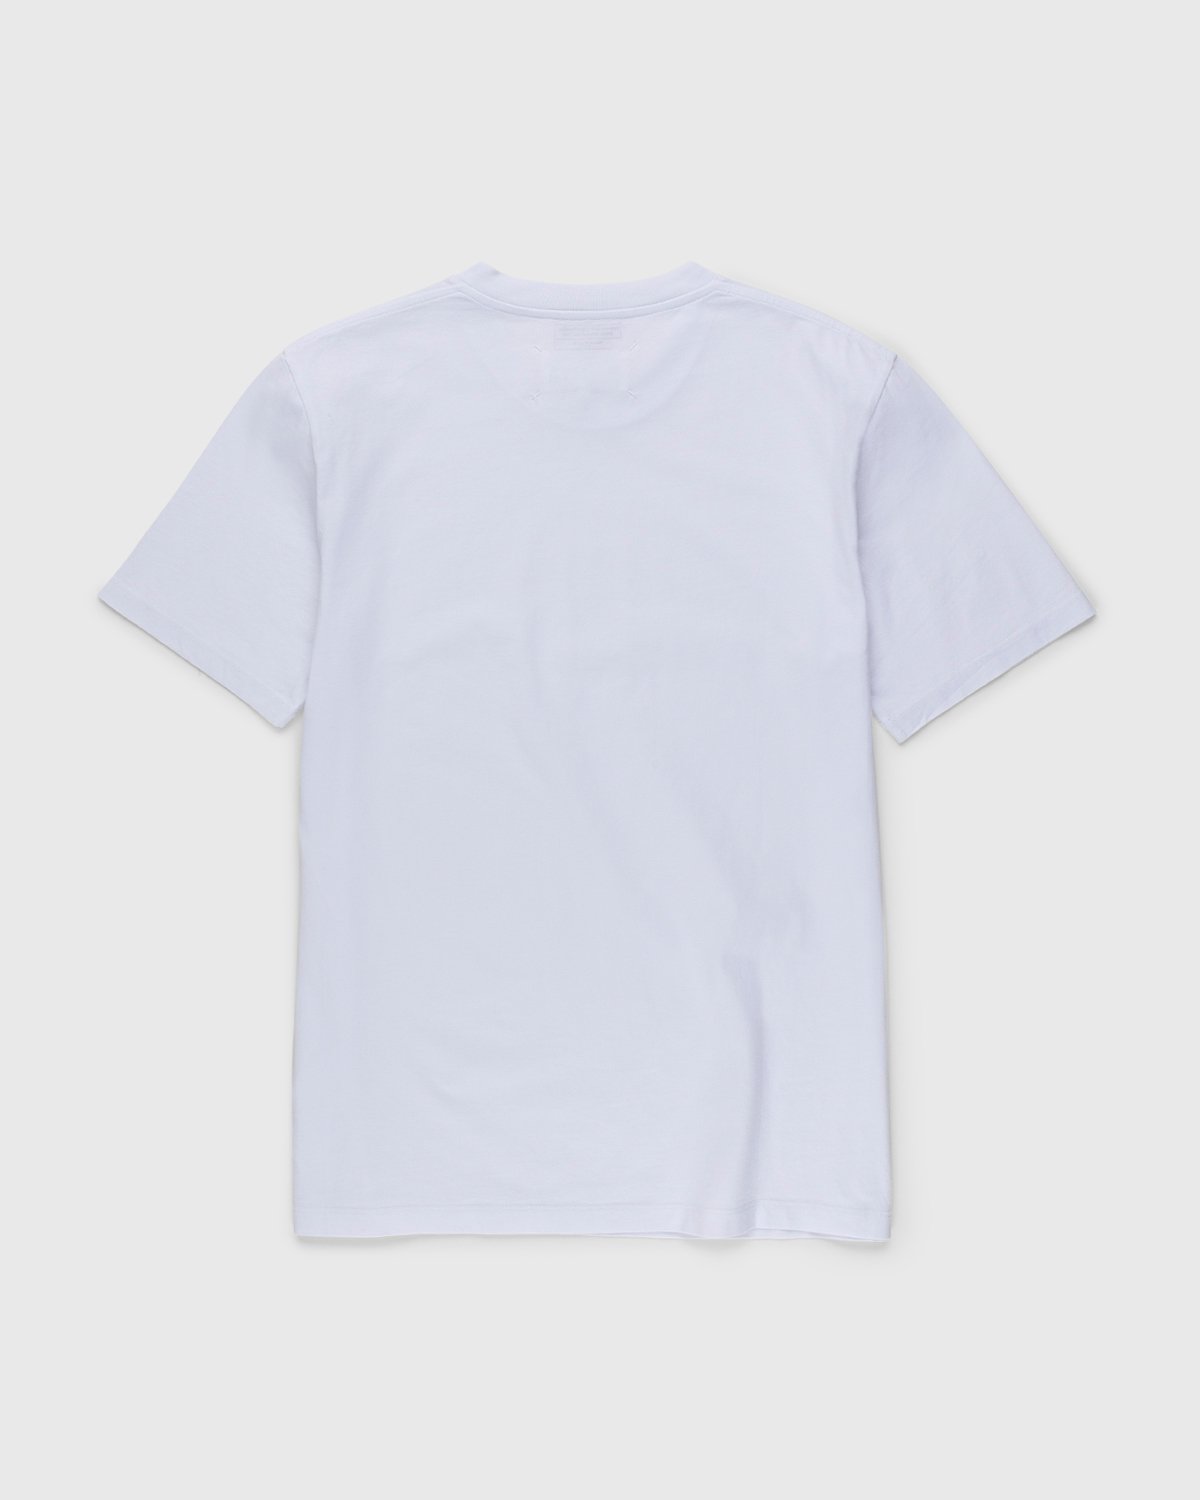 Maison Margiela - Shades of White T-Shirts 3 Pack Multi - Clothing - White - Image 3